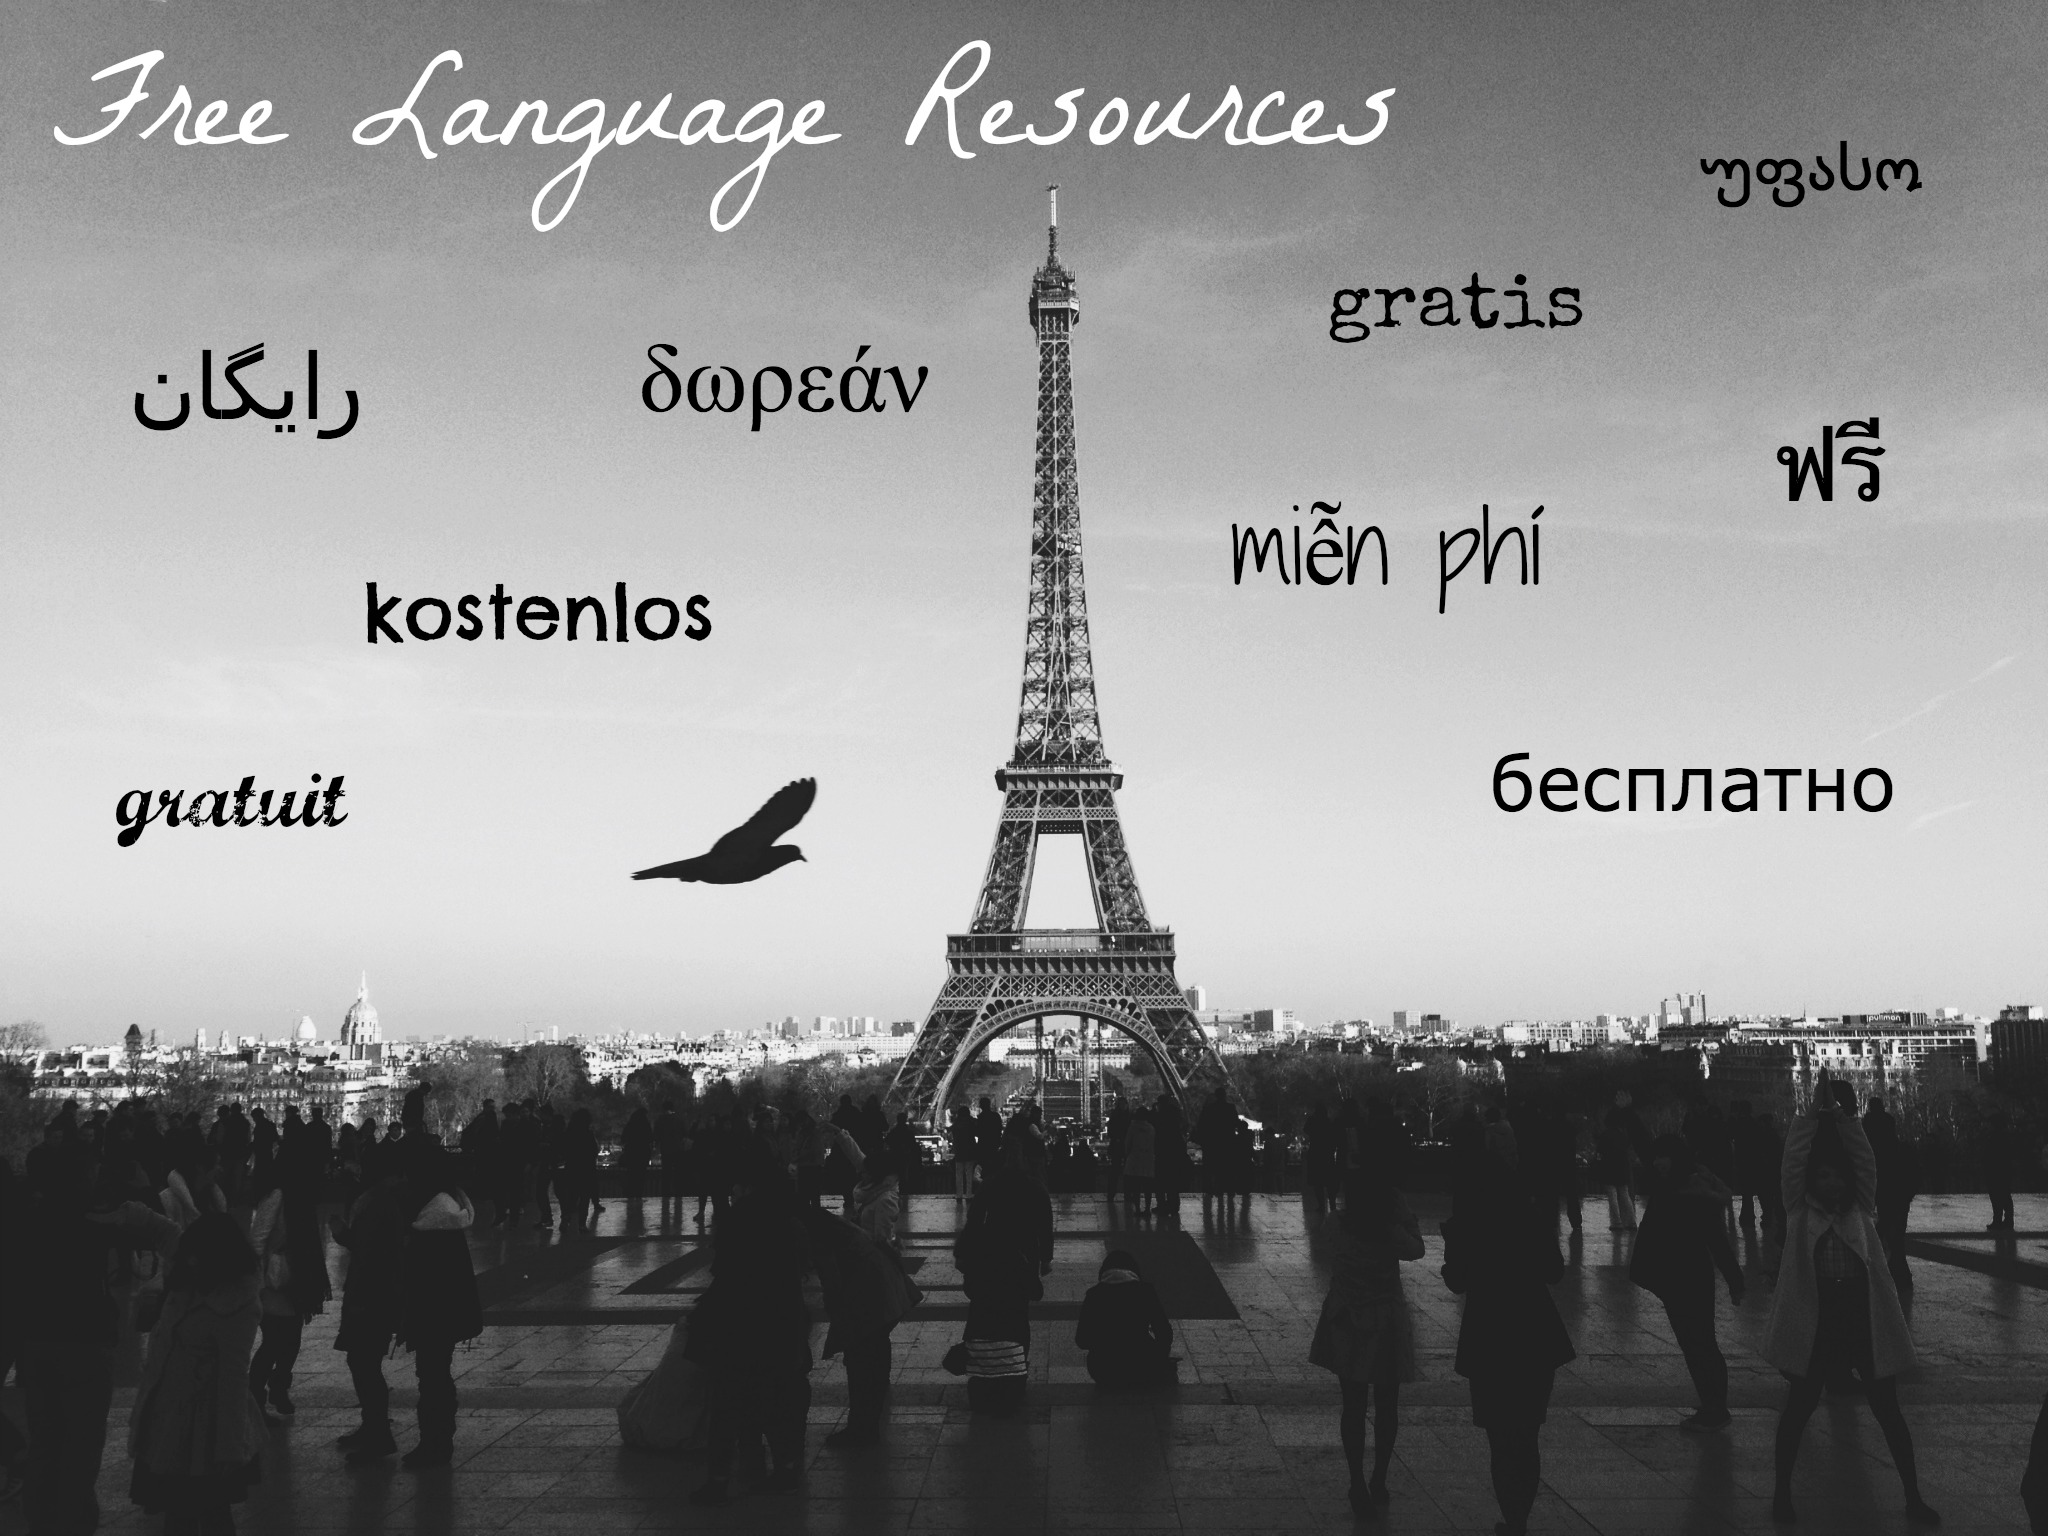 Free Language Resources